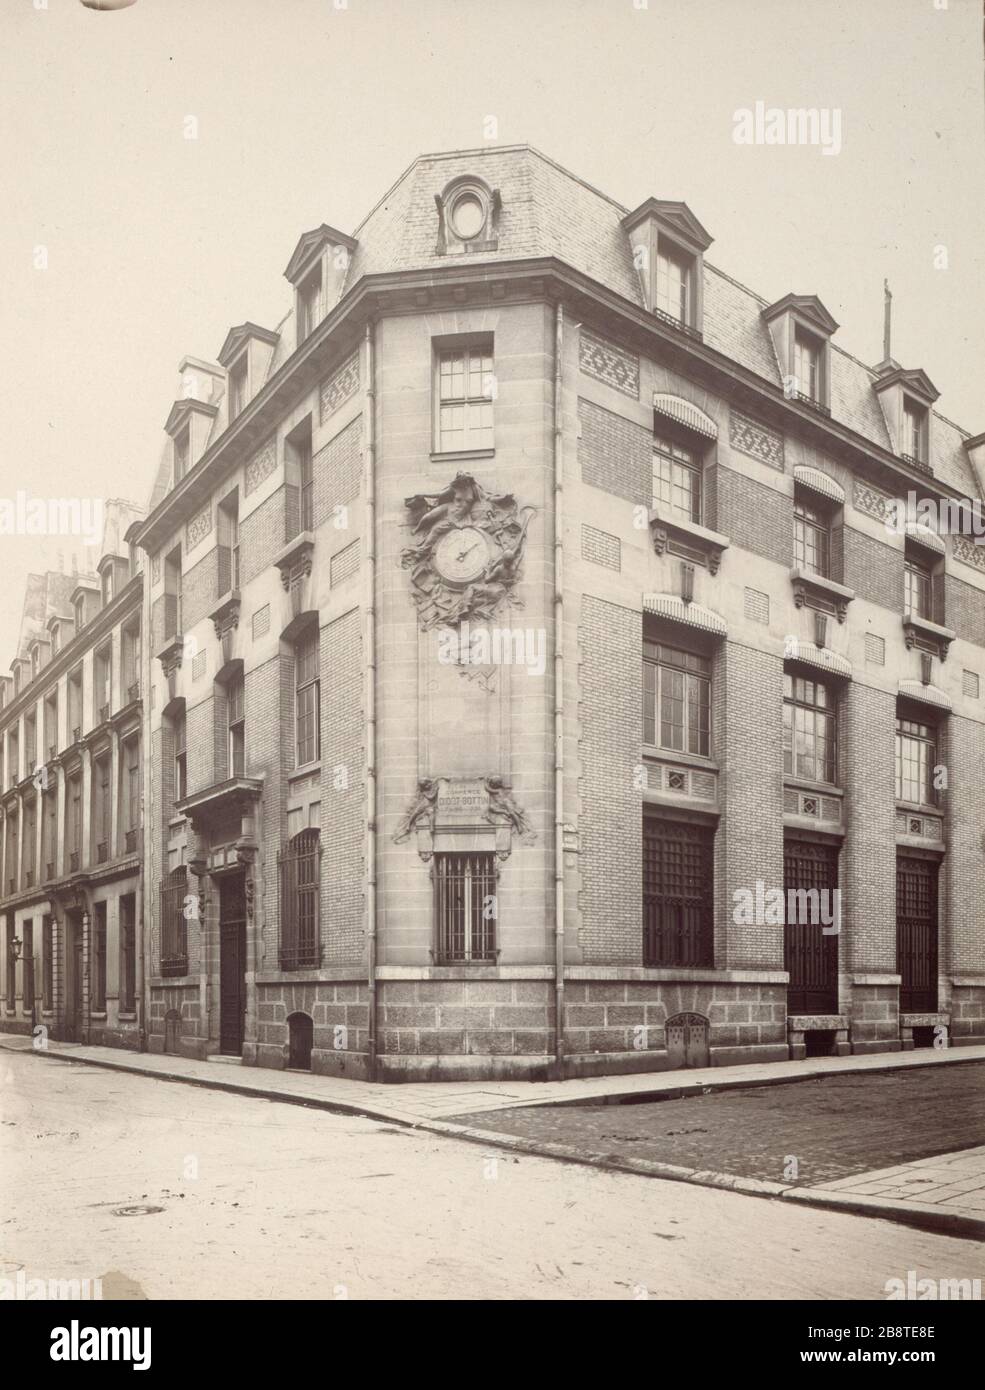 STREET UNIVERSITY Rue de L'Université, angle de la maison Didot-Bottin. Paris (VIIème arr.). Photographie de Charles Lansiaux (1855-1939). Paris, musée Carnavalet. Stock Photo